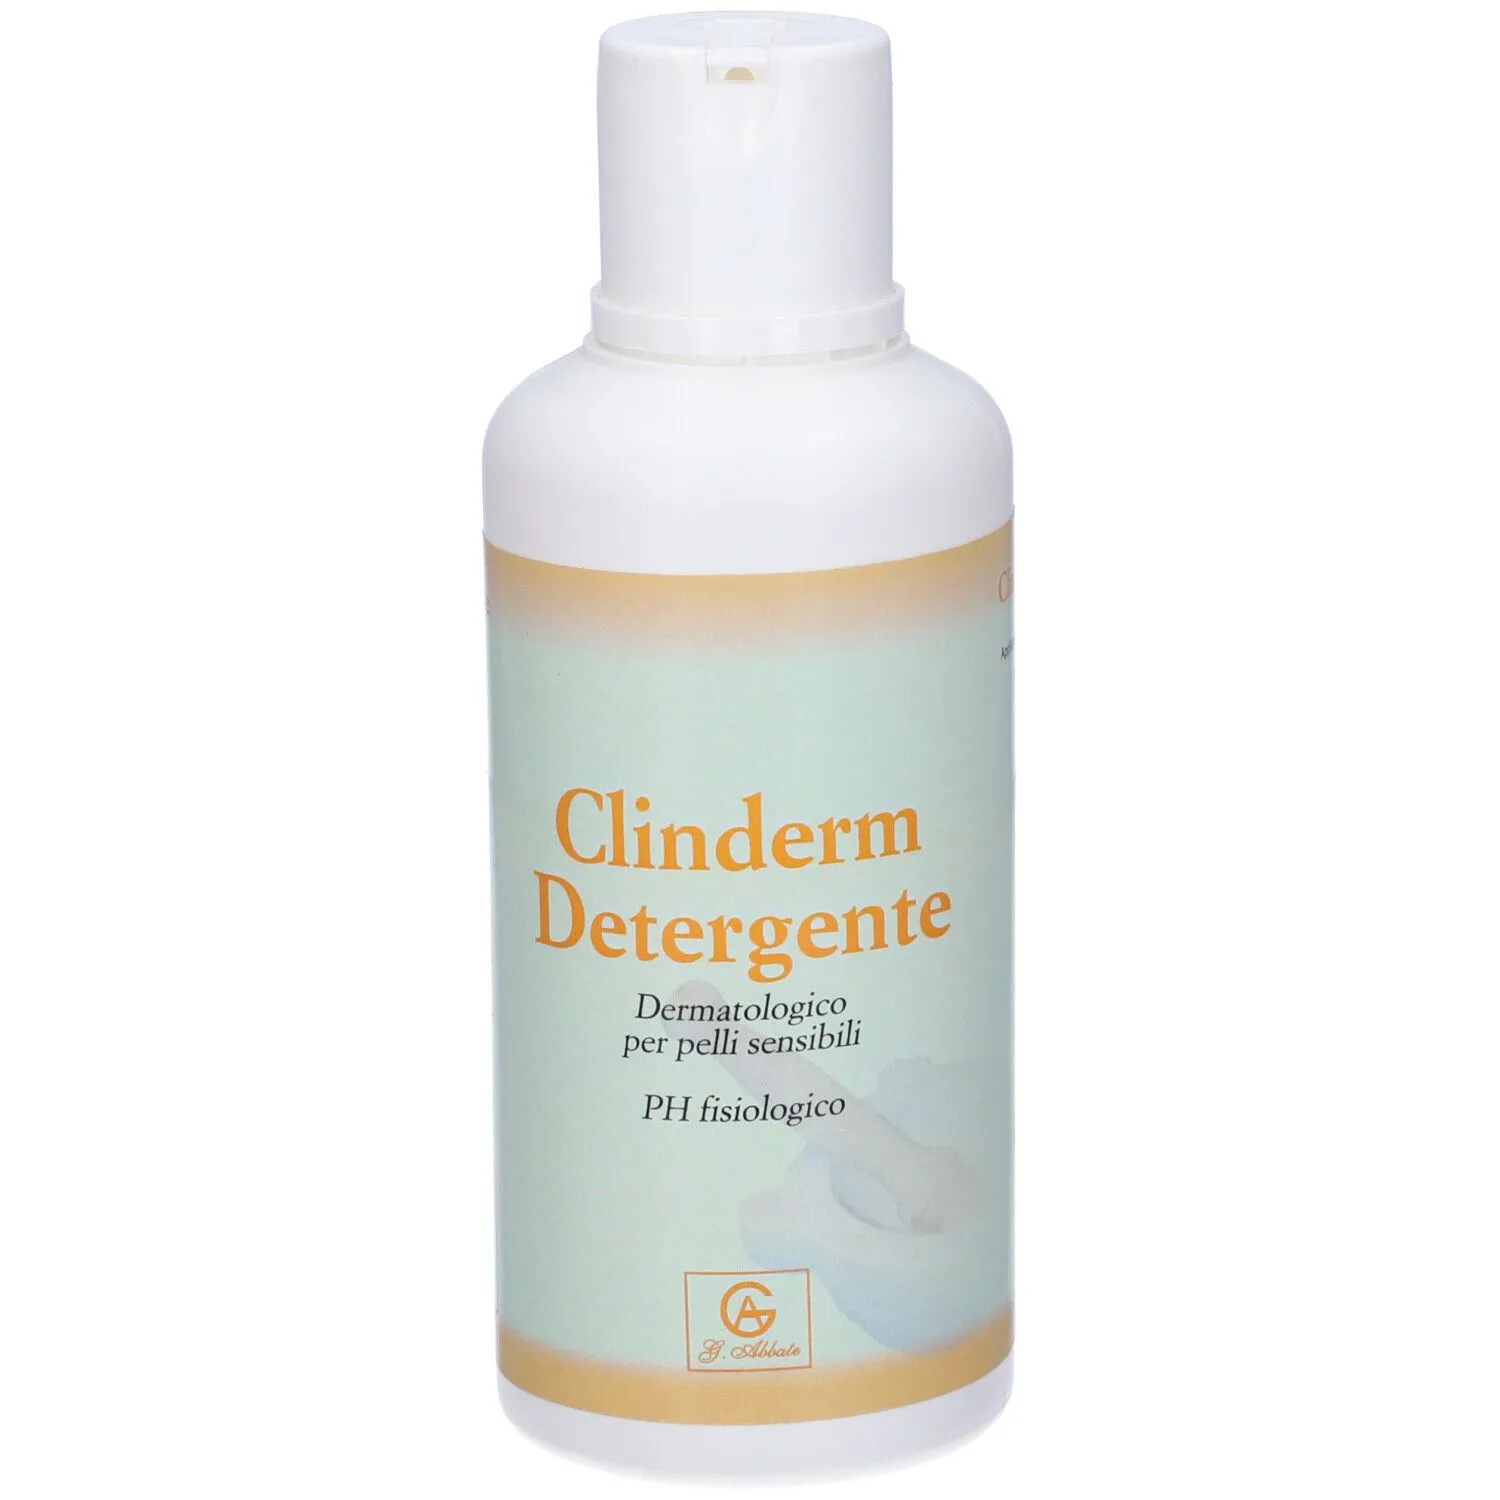 Clinderm Detergente Dermatologico